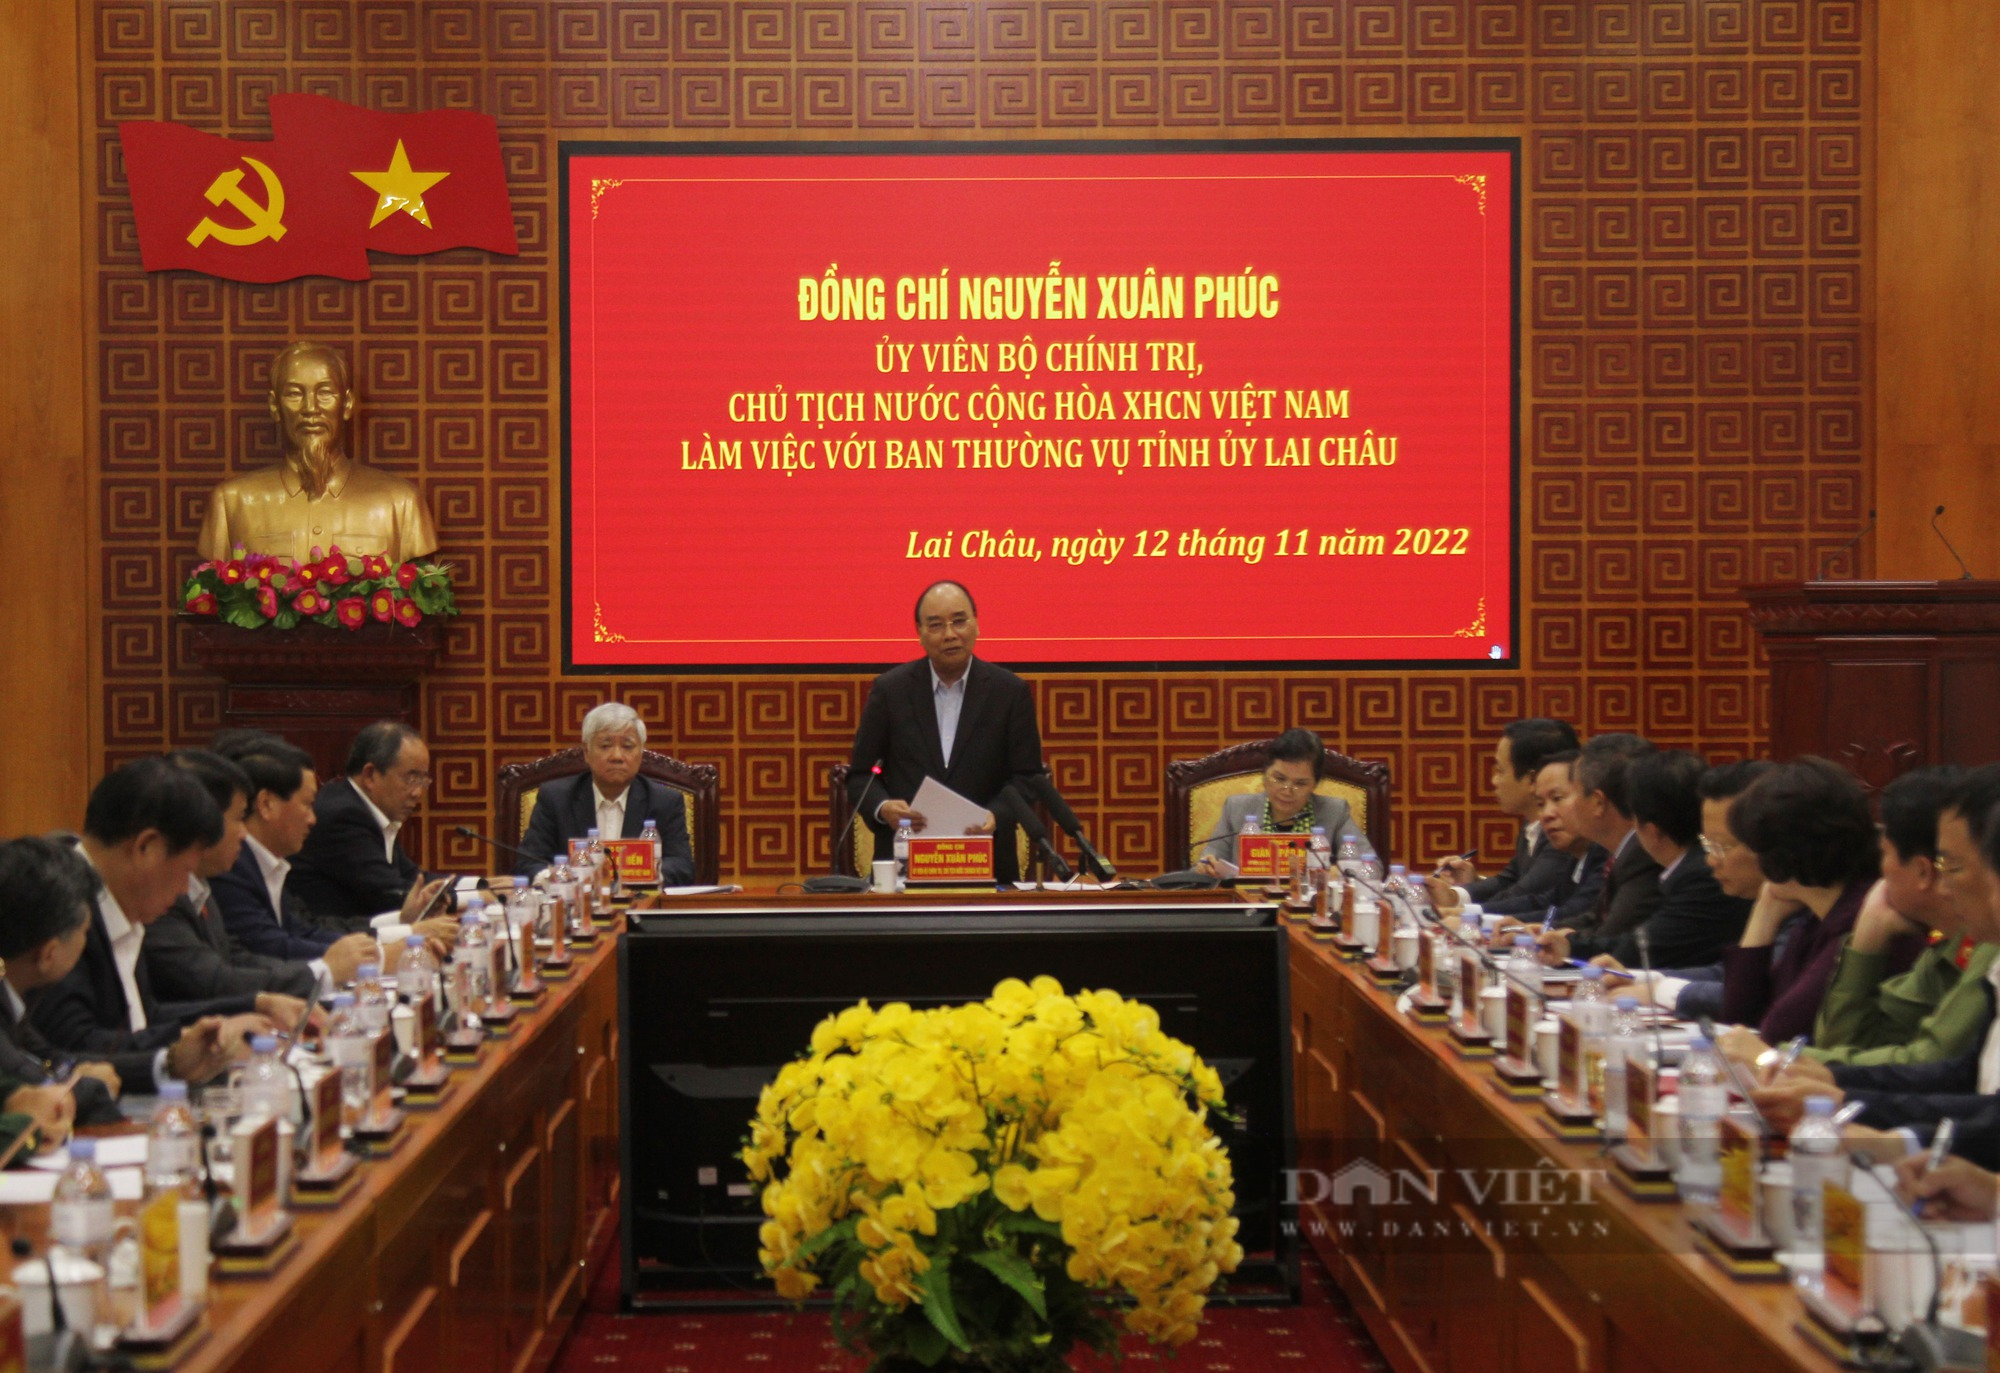 Chủ tịch nước Nguyễn Xuân Phúc làm việc với Ban Thường vụ Tỉnh ủy Lai Châu - Ảnh 1.